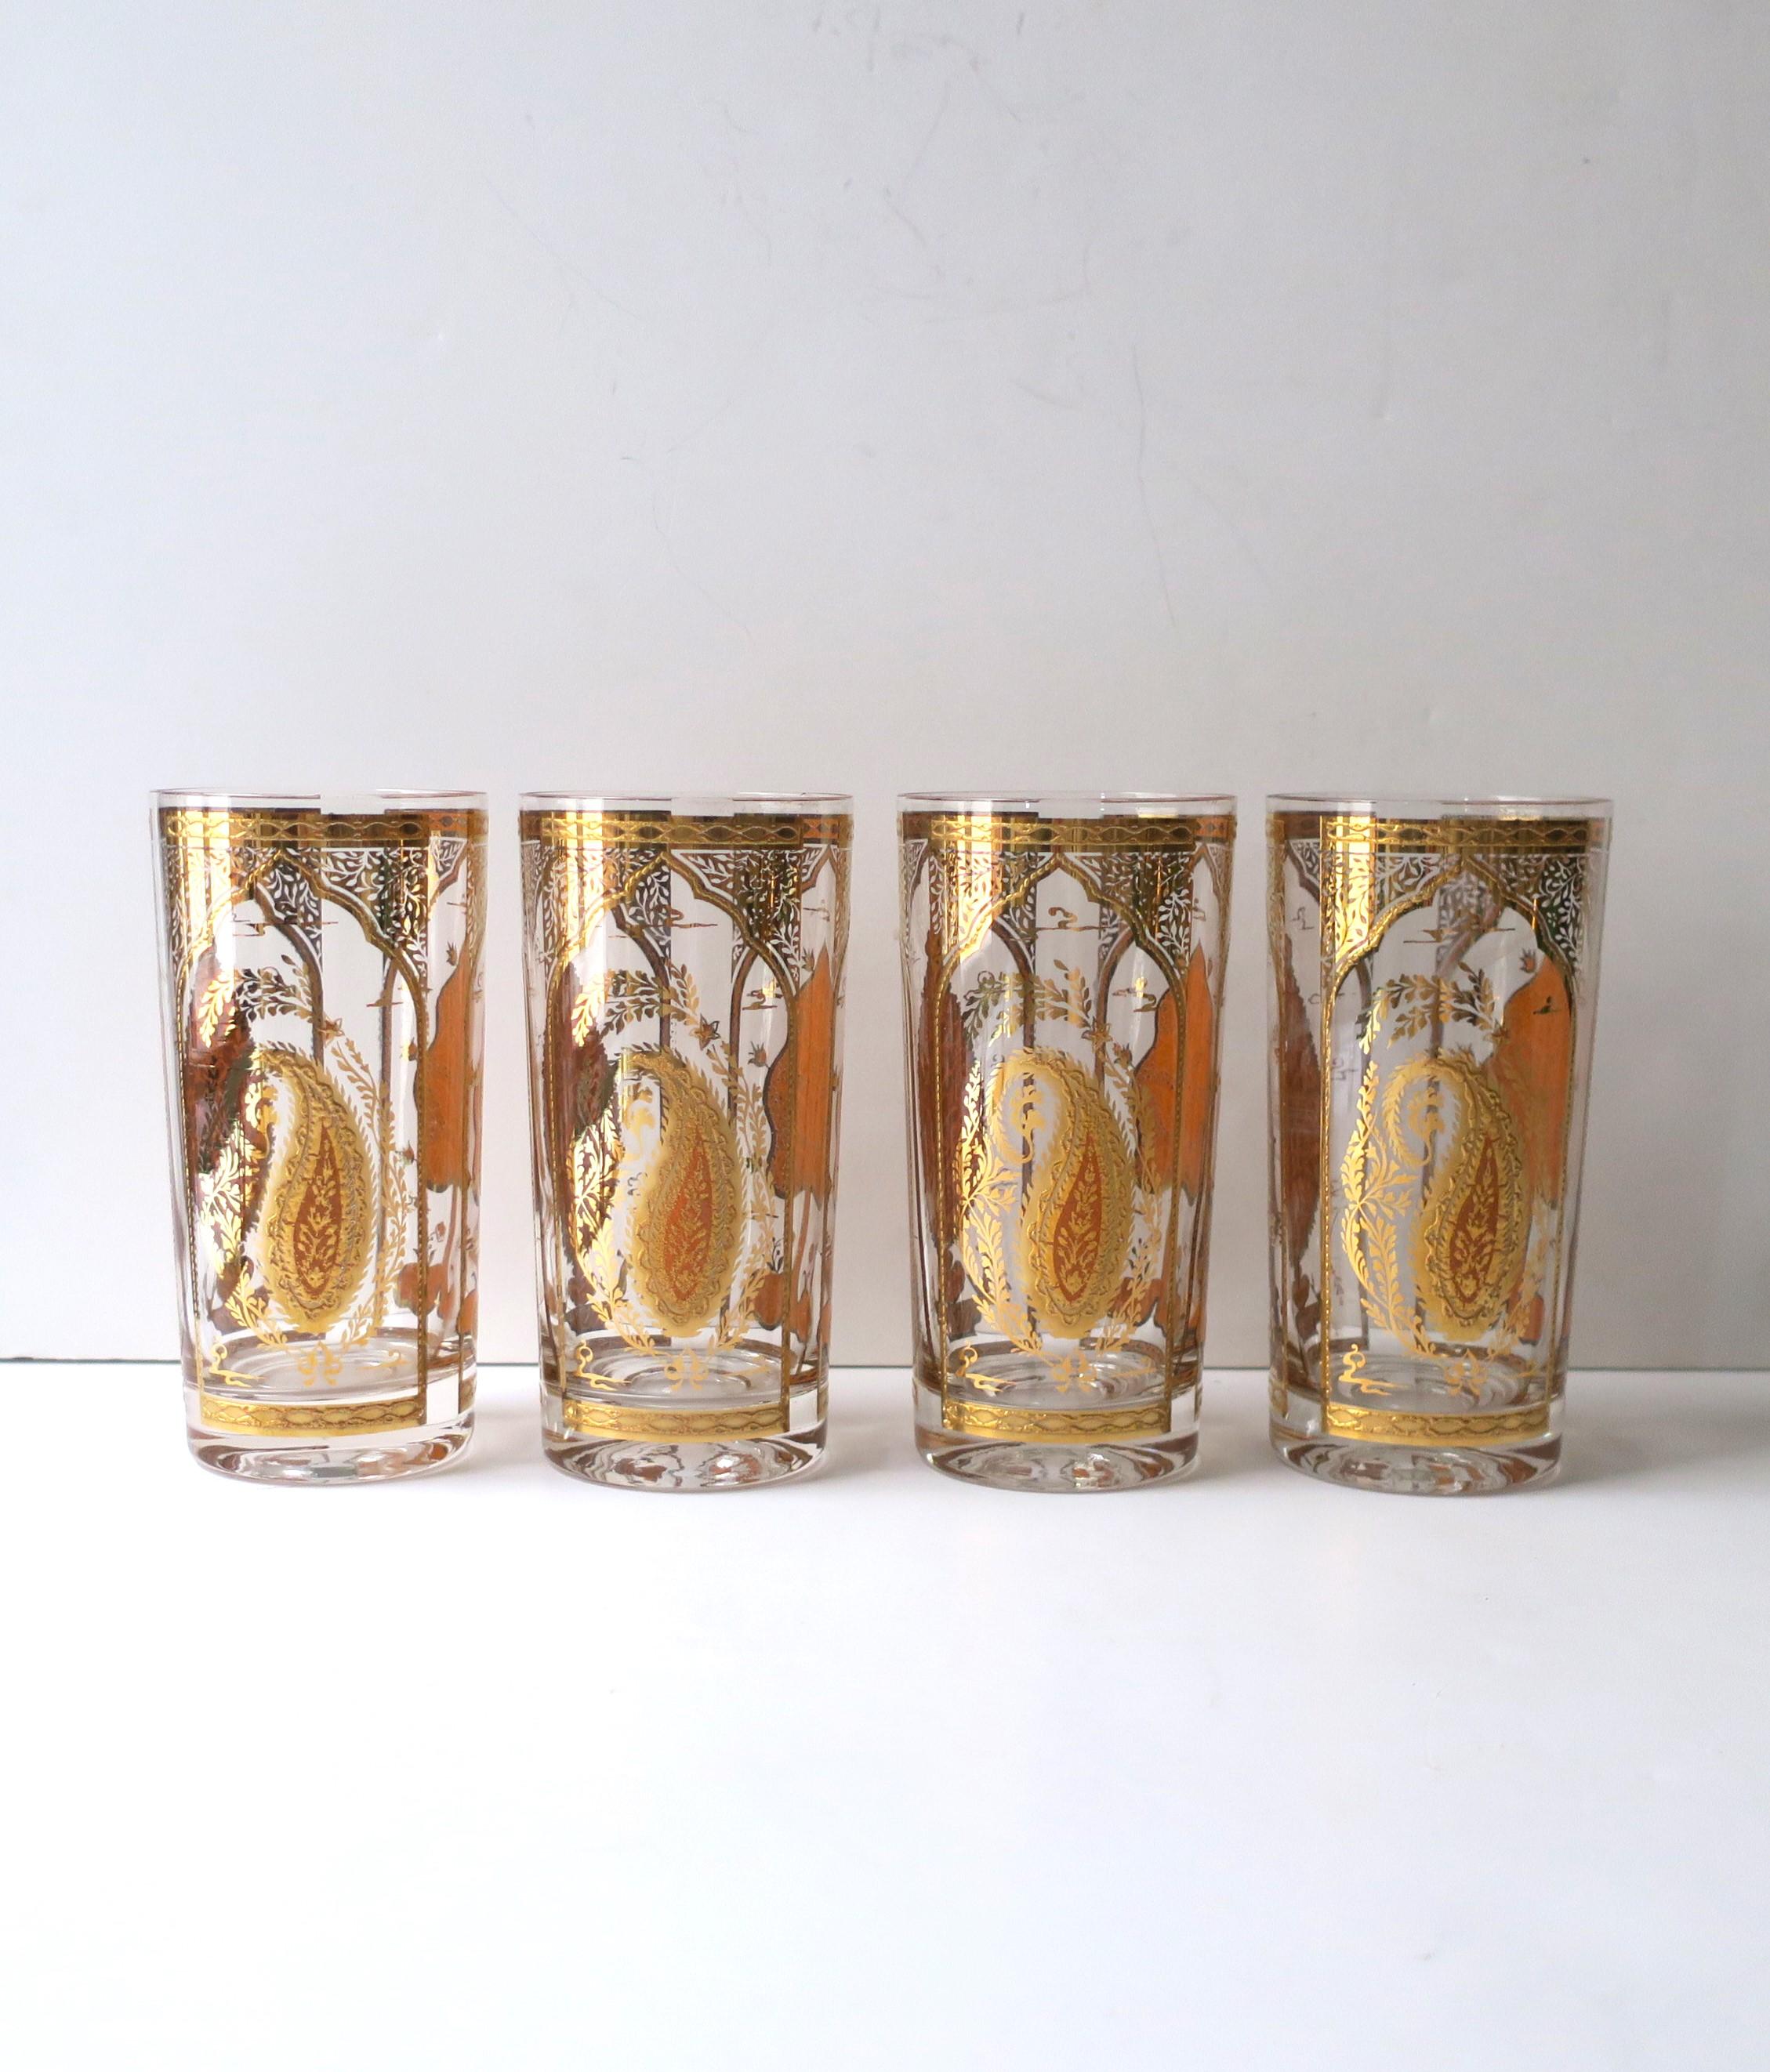 Un magnifique ensemble de quatre (4) verres à cocktail highball en or 22 ct à motif mauresque, de Culver, Brooklyn, New York, vers le milieu ou la fin du 20e siècle. Ce design est rare et difficile à trouver. Les verres présentent trois motifs :